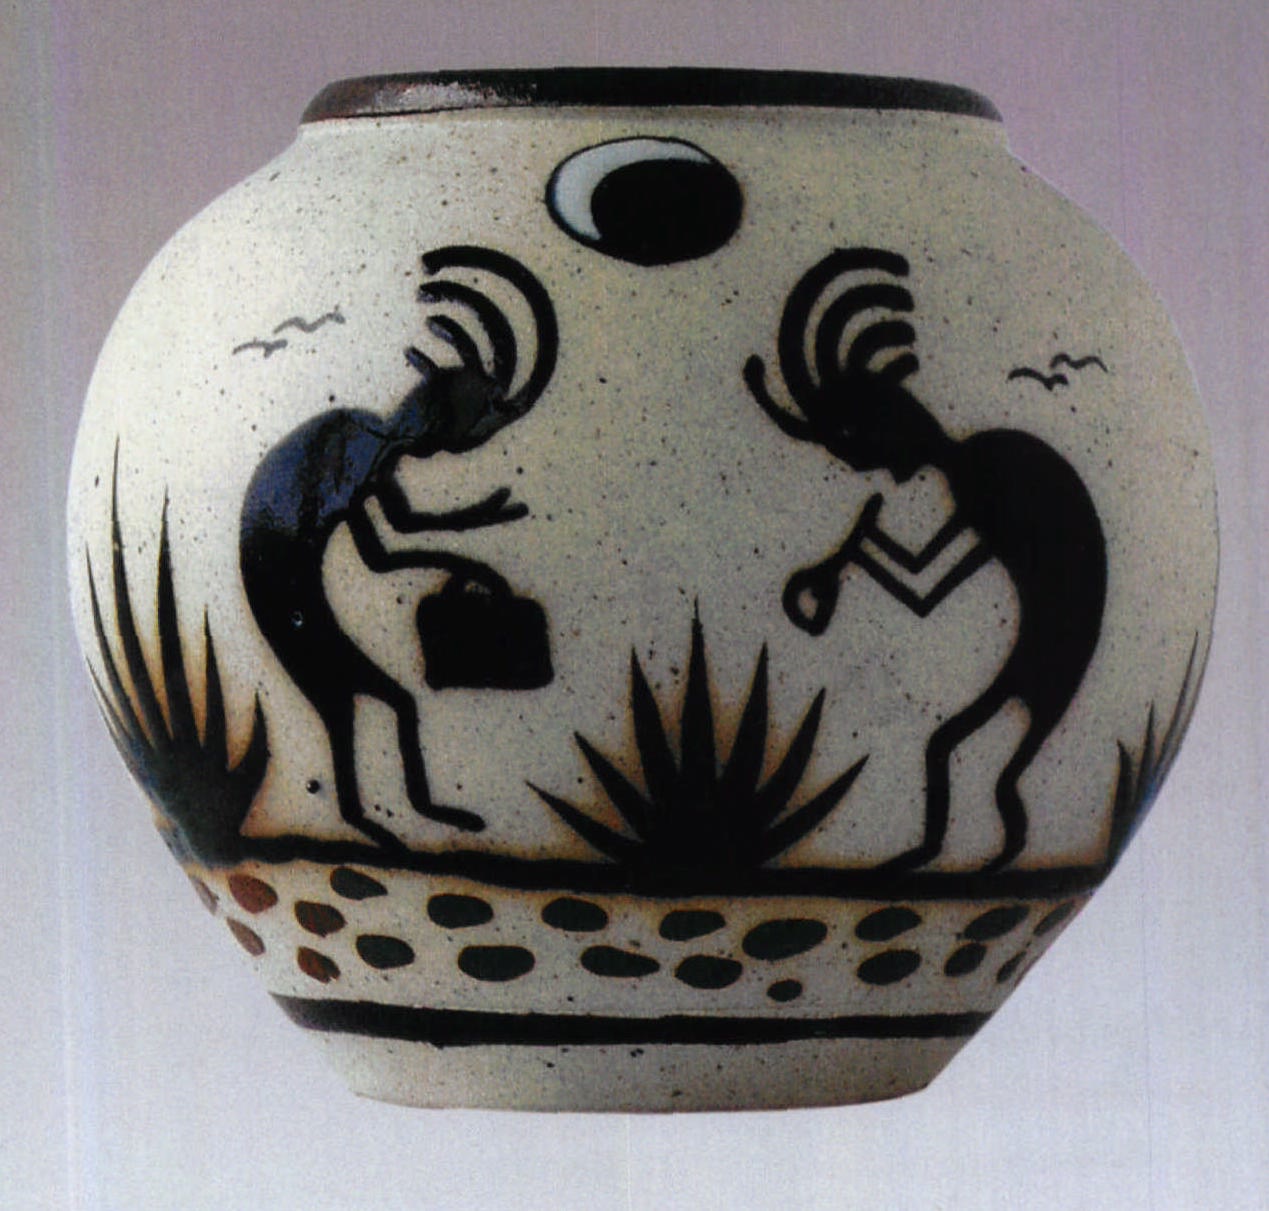 墨西哥印第安人手绘墨彩月夜巫术人物纹陶罐